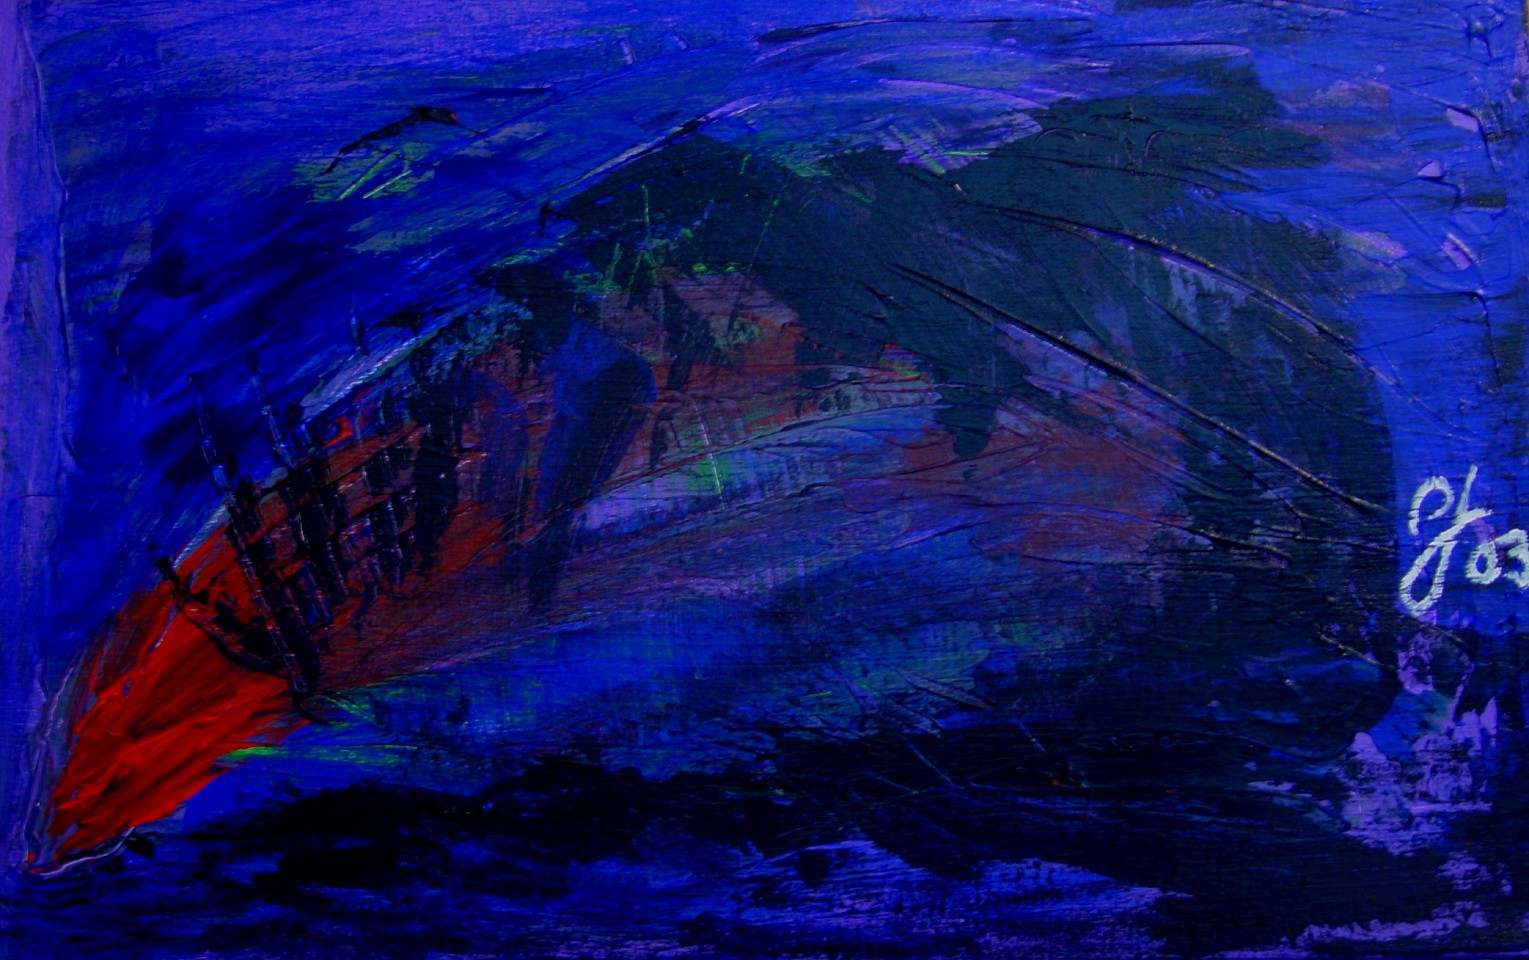 Diego Jacobson, Dream shadow, 2003
Acrylic on Canvas, 14 x 22 in. (35.6 x 55.9 cm)
0487